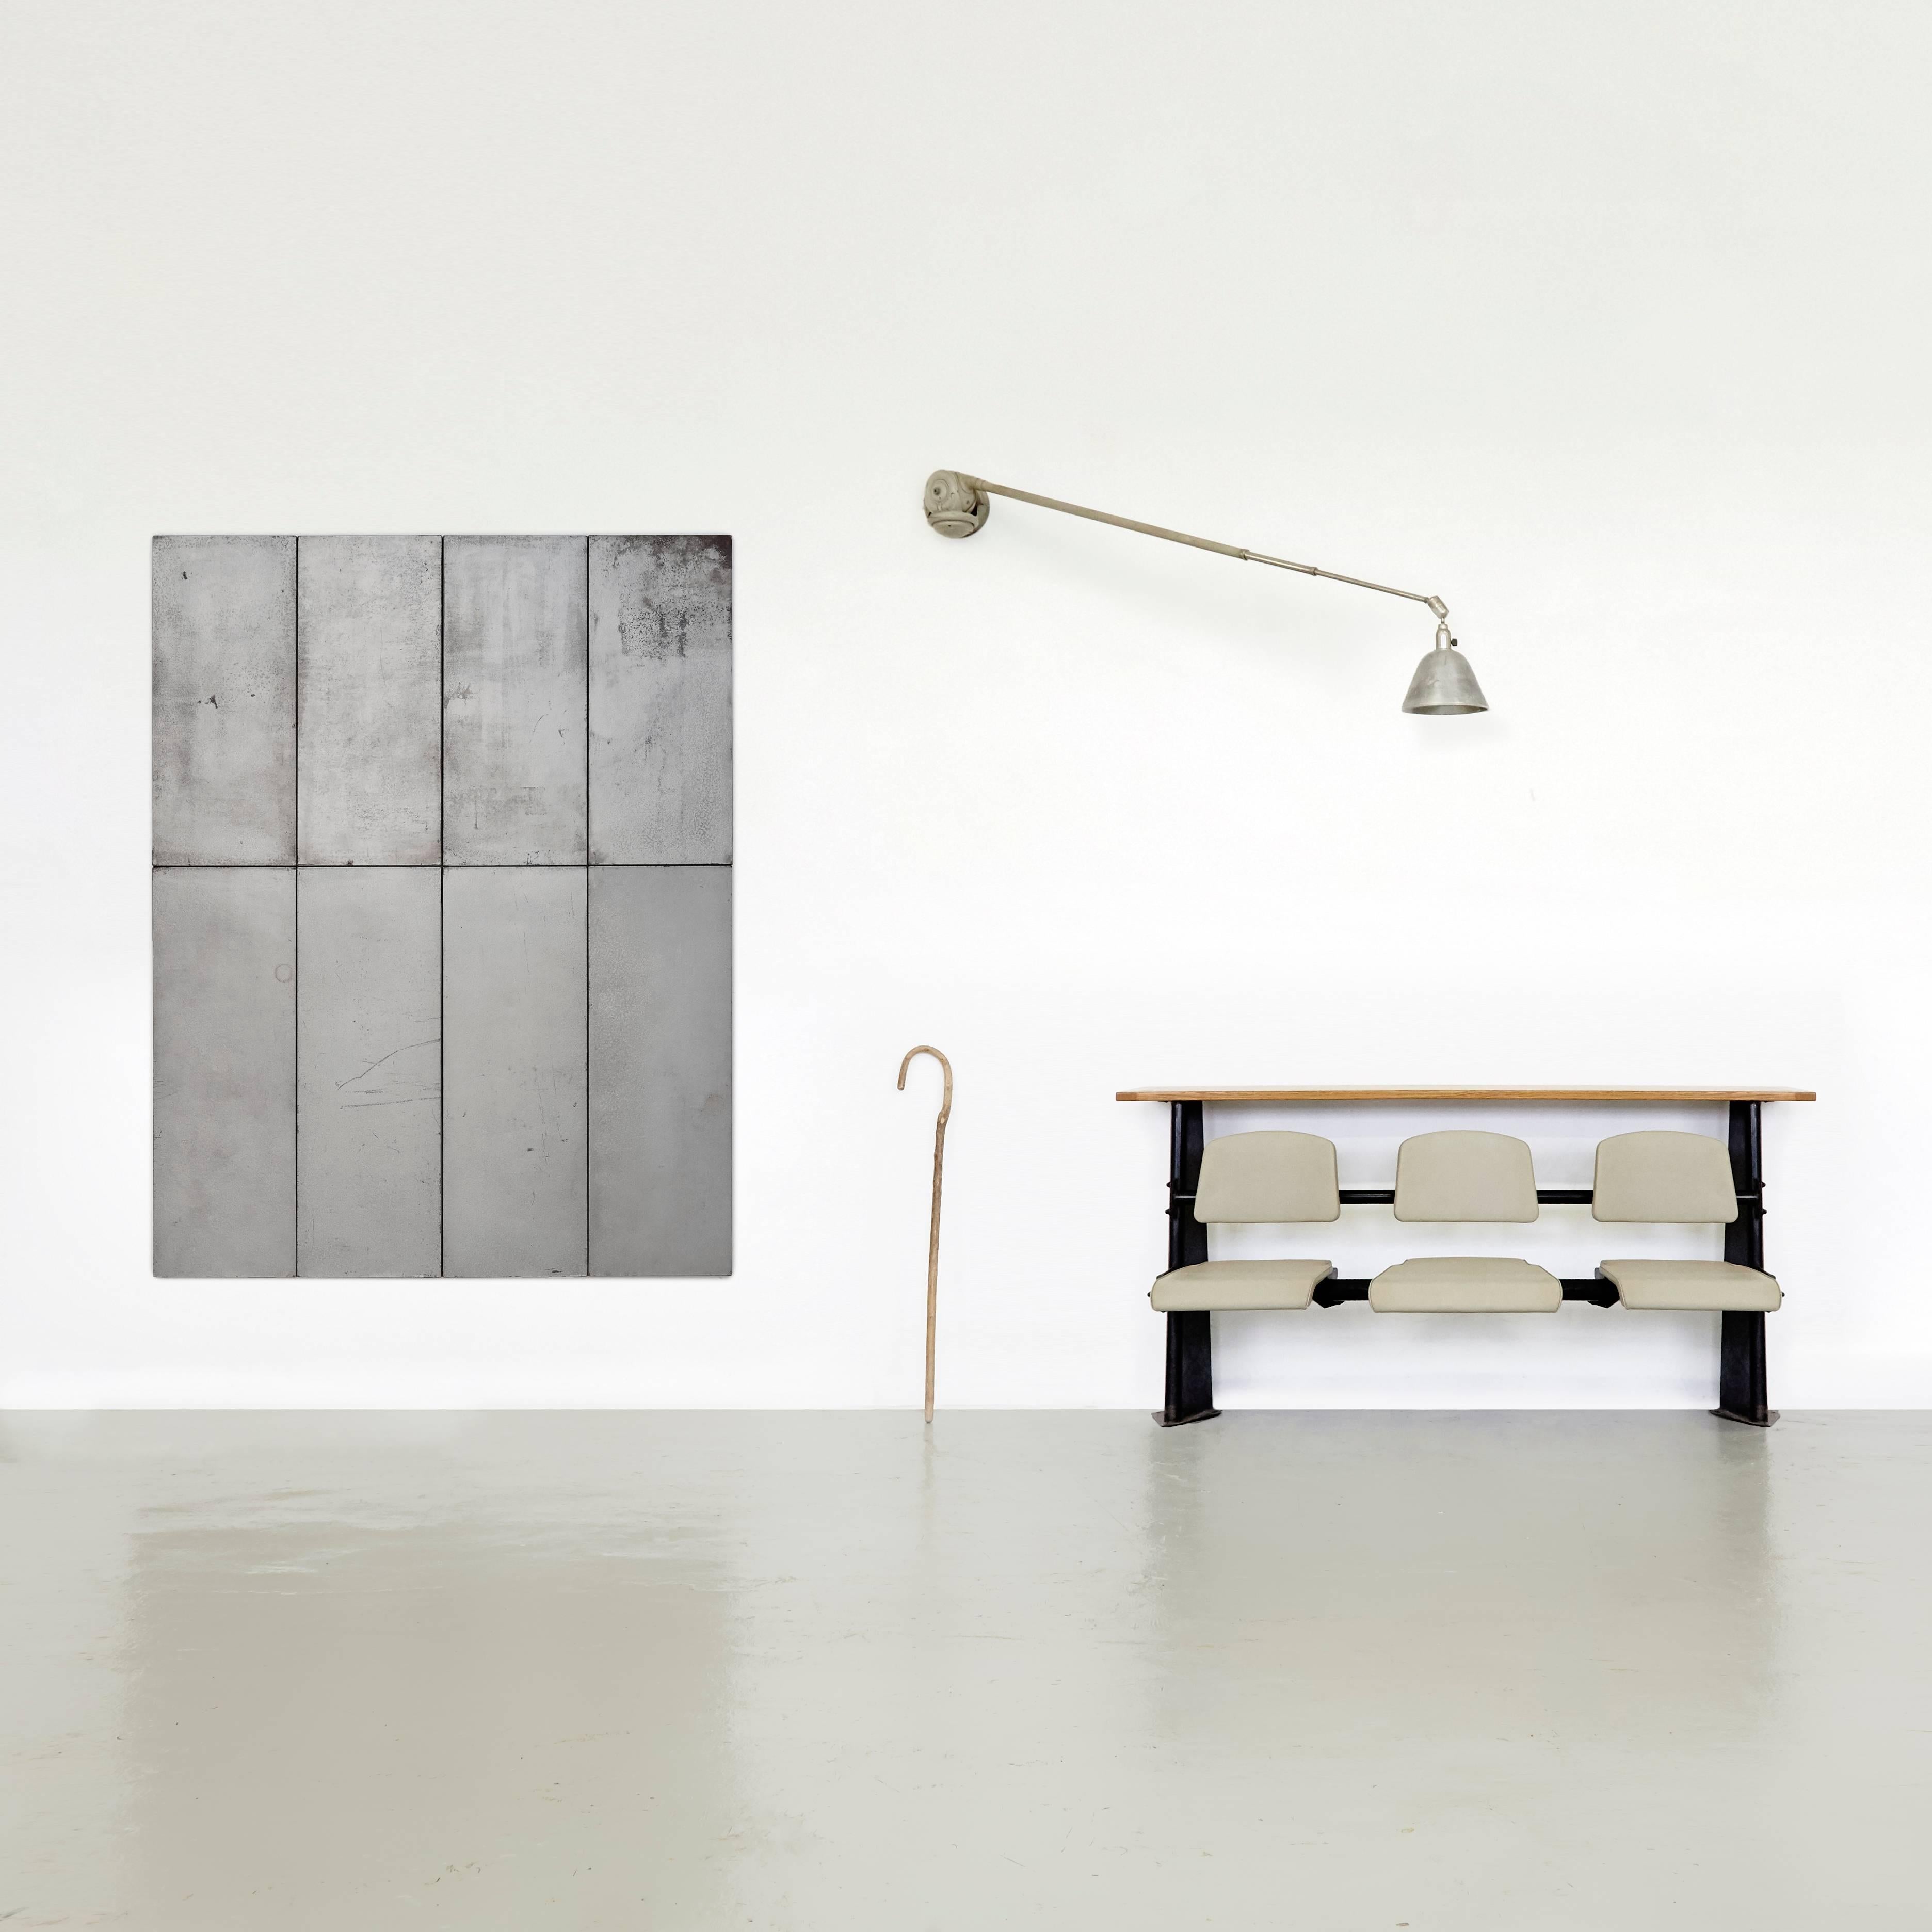 Ramon Horts, minimalismo grandes obras de arte.

Estructuras de composiciones metálicas realizadas en Barcelona, hacia 2016
Firmado por él mismo en punzón de grabado.

En las condiciones originales.

 